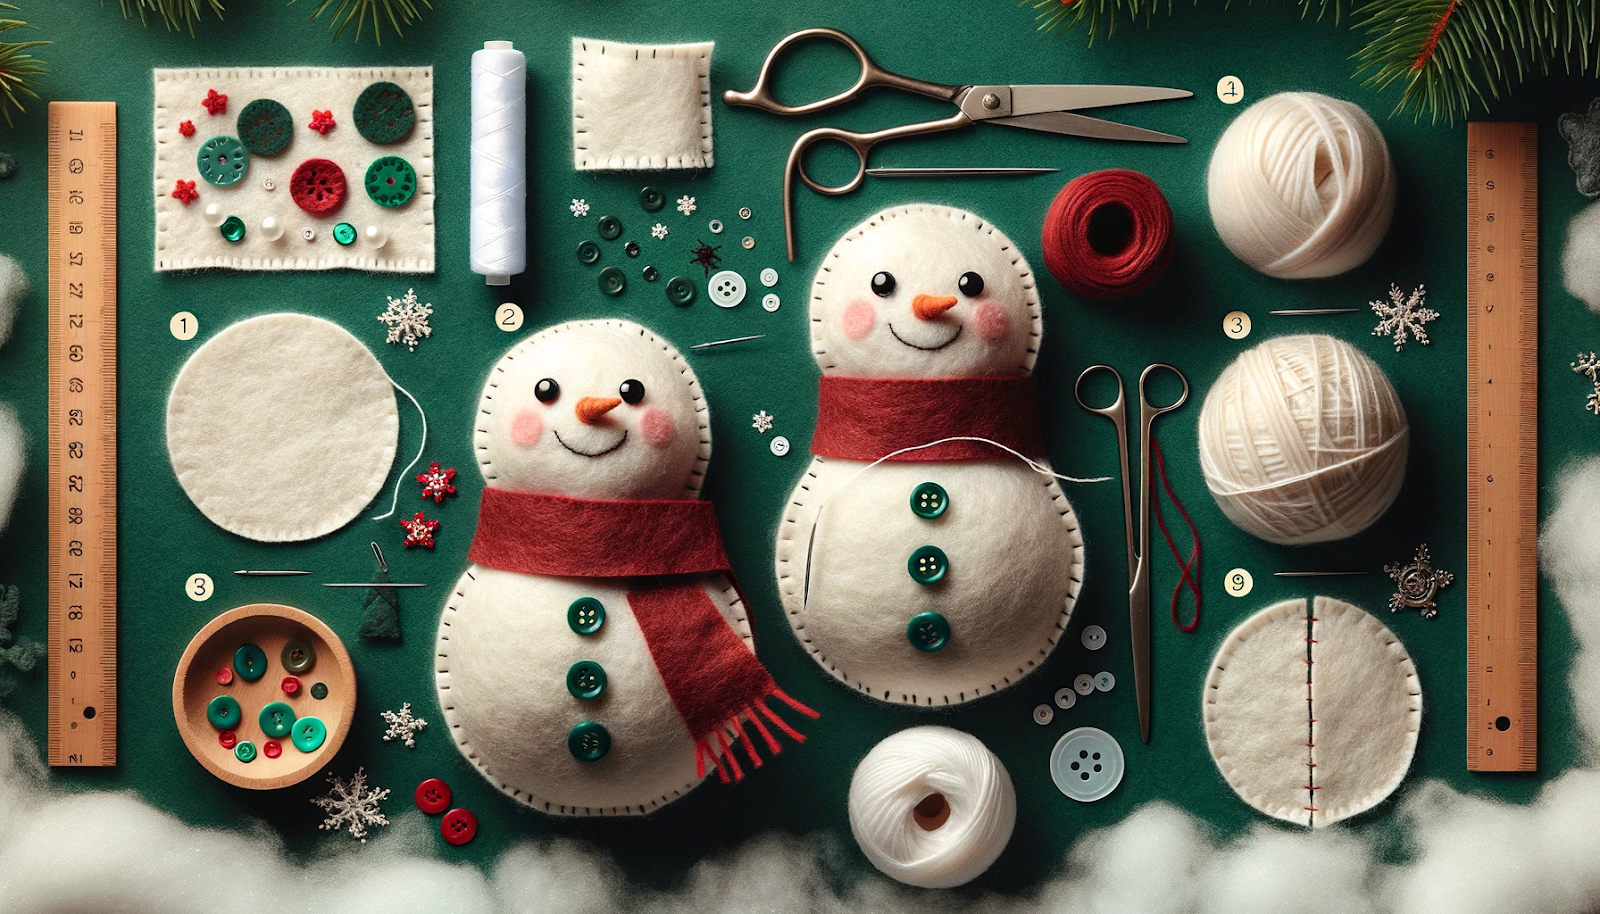 paisagens que descrevem o processo passo a passo de criação de um boneco de neve de Natal em feltro